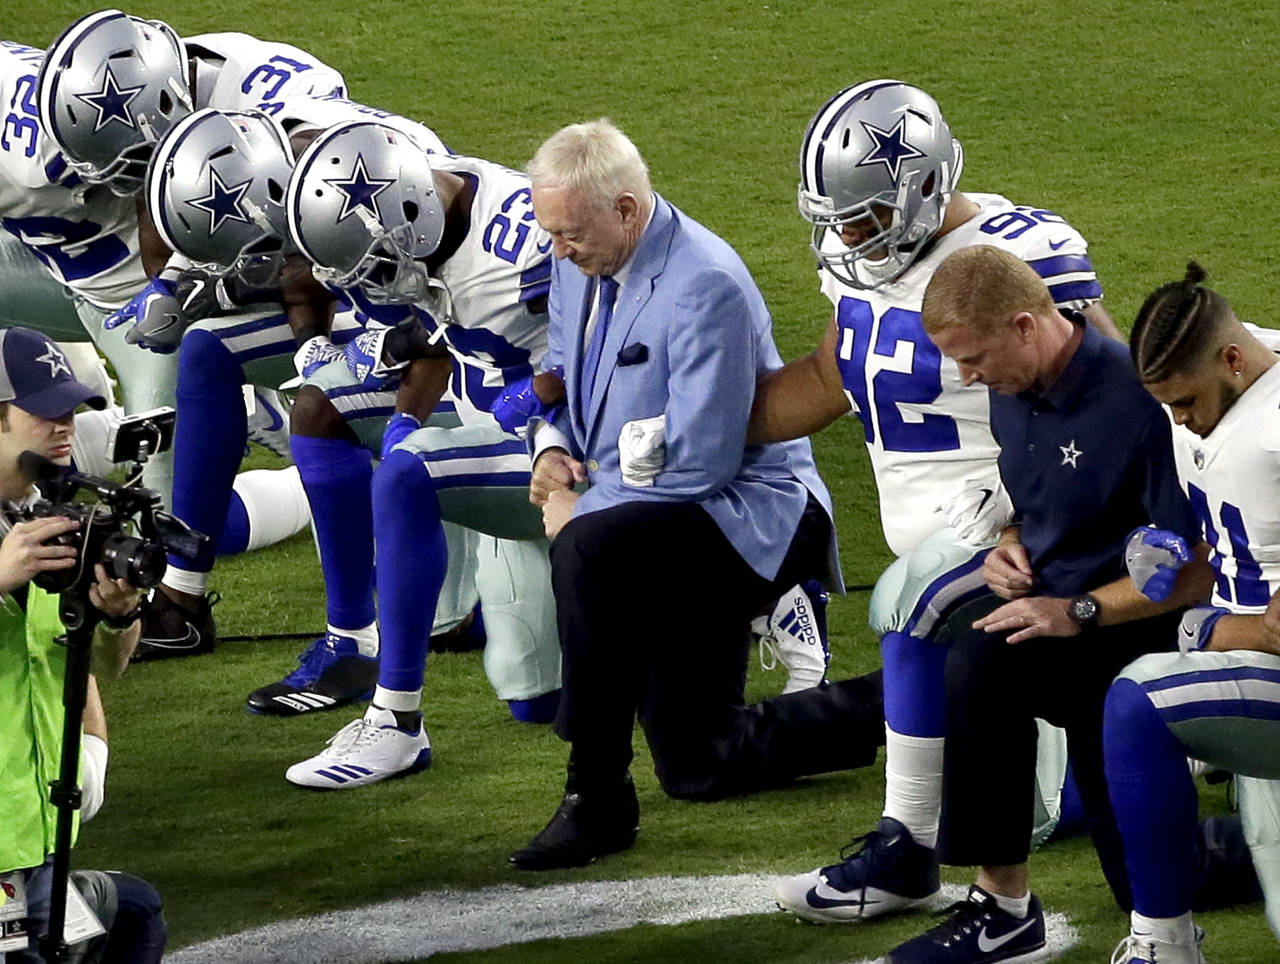 La crisis de las protestas en el himno nacional ha dado un giro completo después que el dueño de los Cowboys ha expresado que dentro de su equipo hay que tener un 'respeto'. Se quejan contra dueño de Cowboys